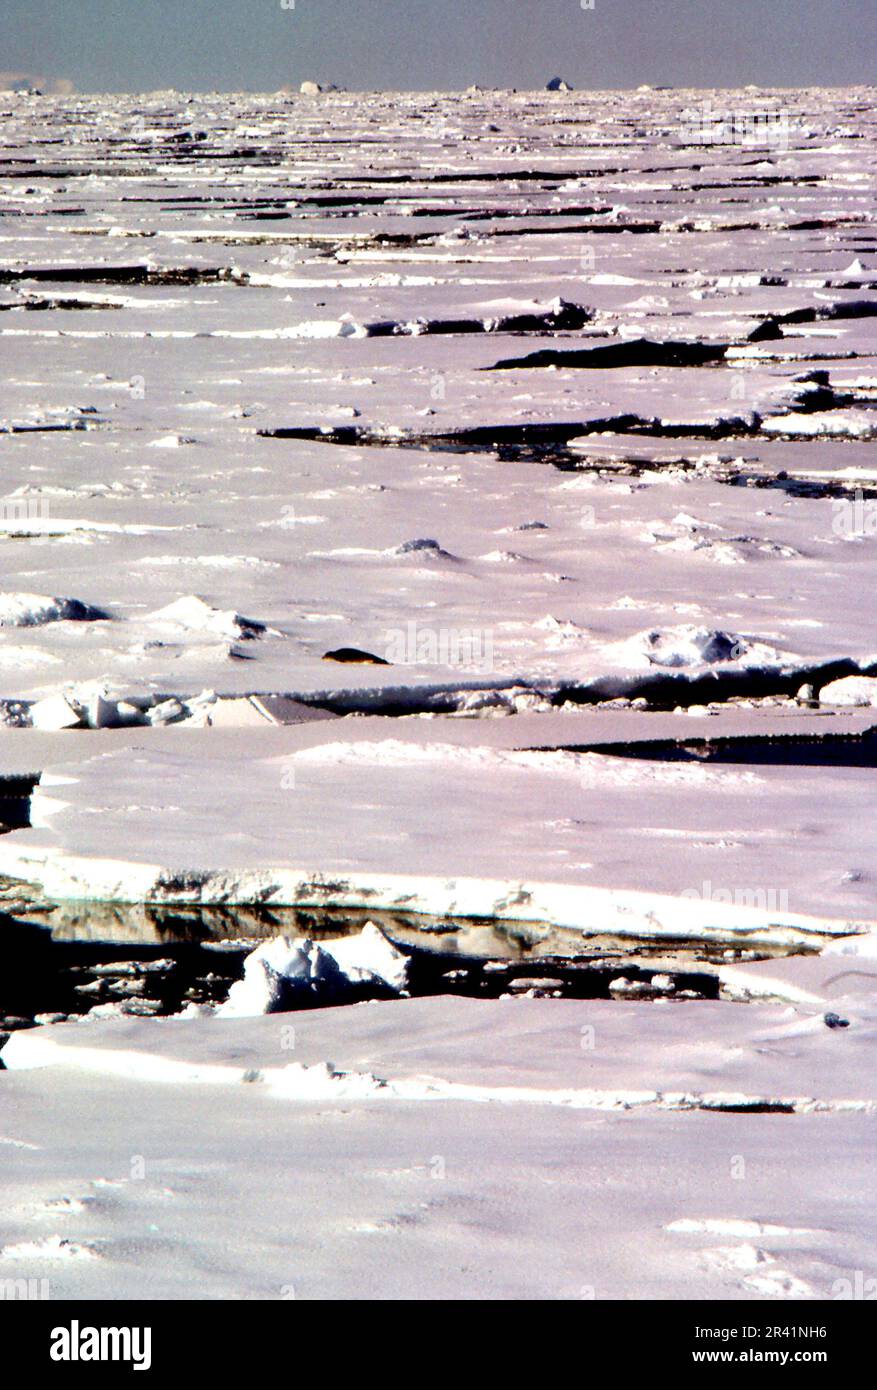 Grahamland Antartide 1972 confezione di ghiaccio per quanto l'occhio può vedere e una foca marrone solitario durante l'annuale indagine idrografica dell'Antartico da parte di HMS Endurance contro il cielo nuvoloso Foto Stock